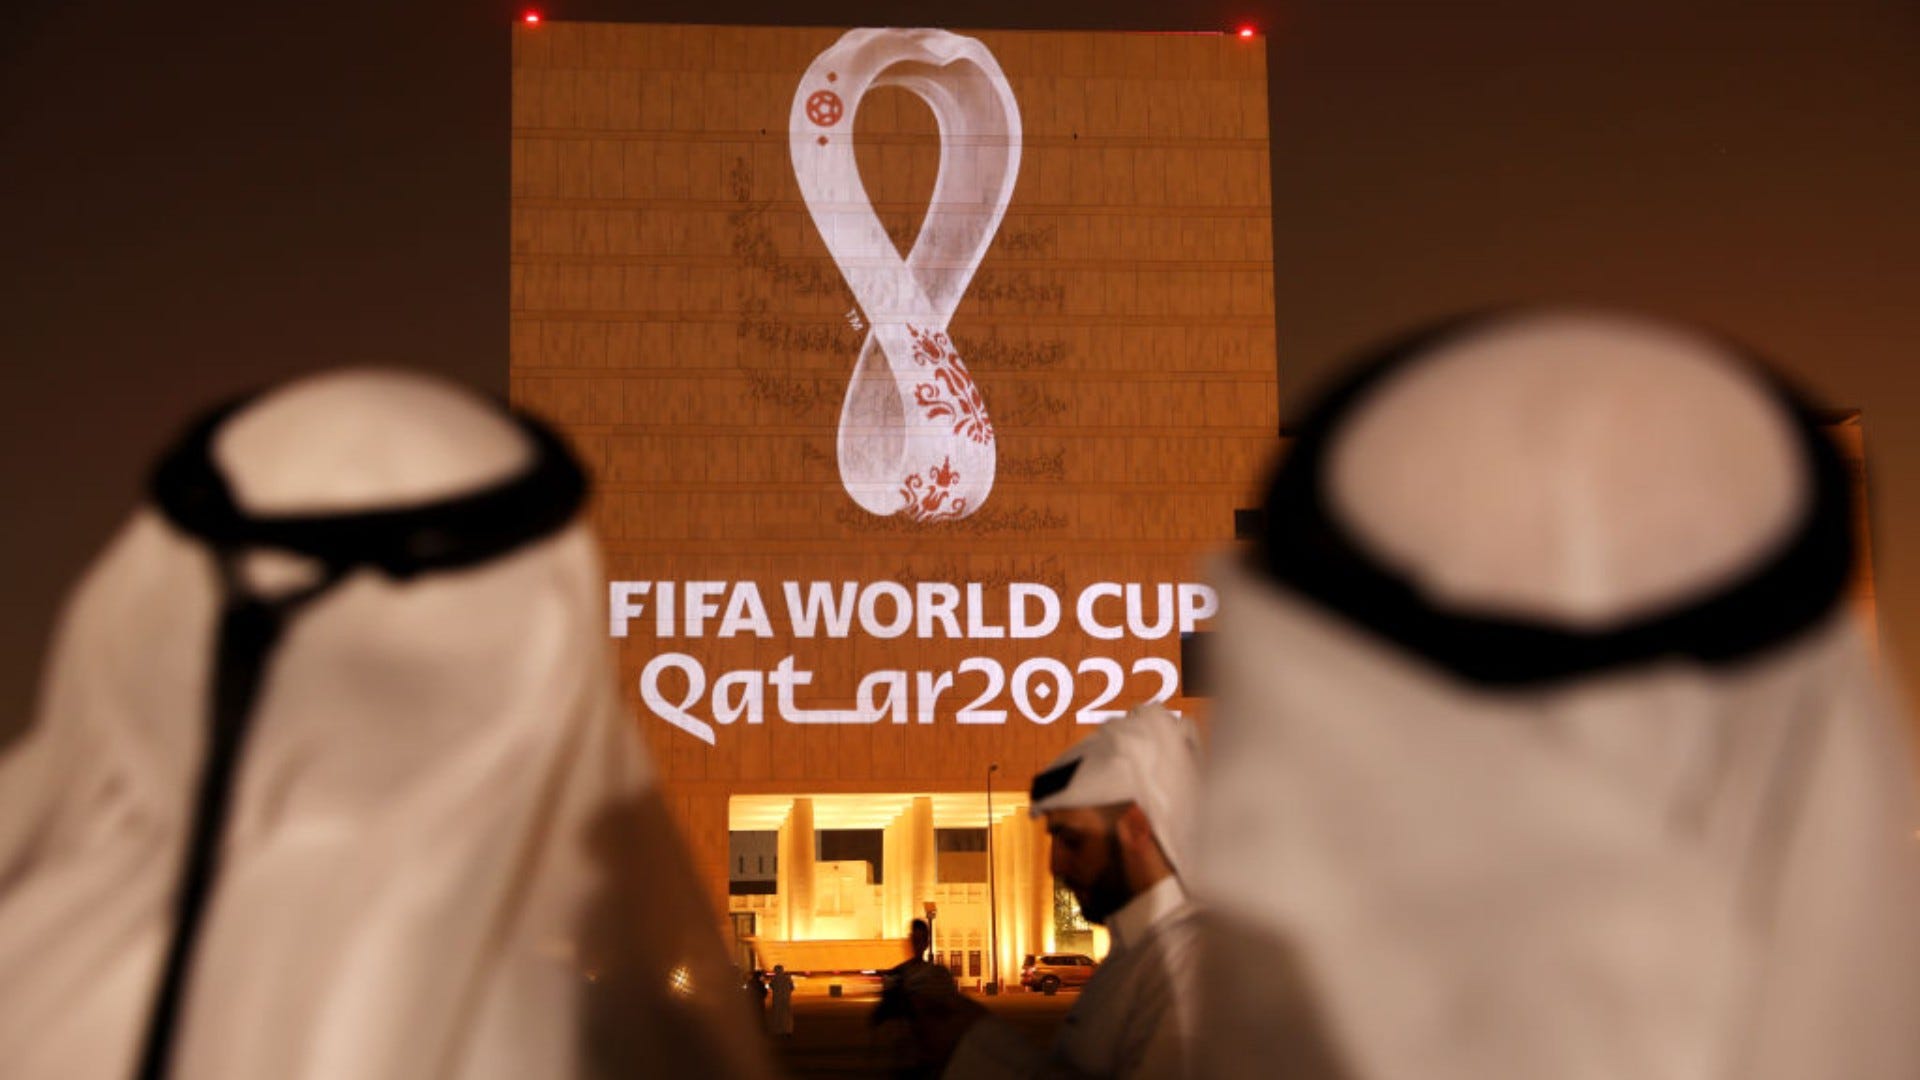 Árabes presumen el logo oficial de qatar 2022